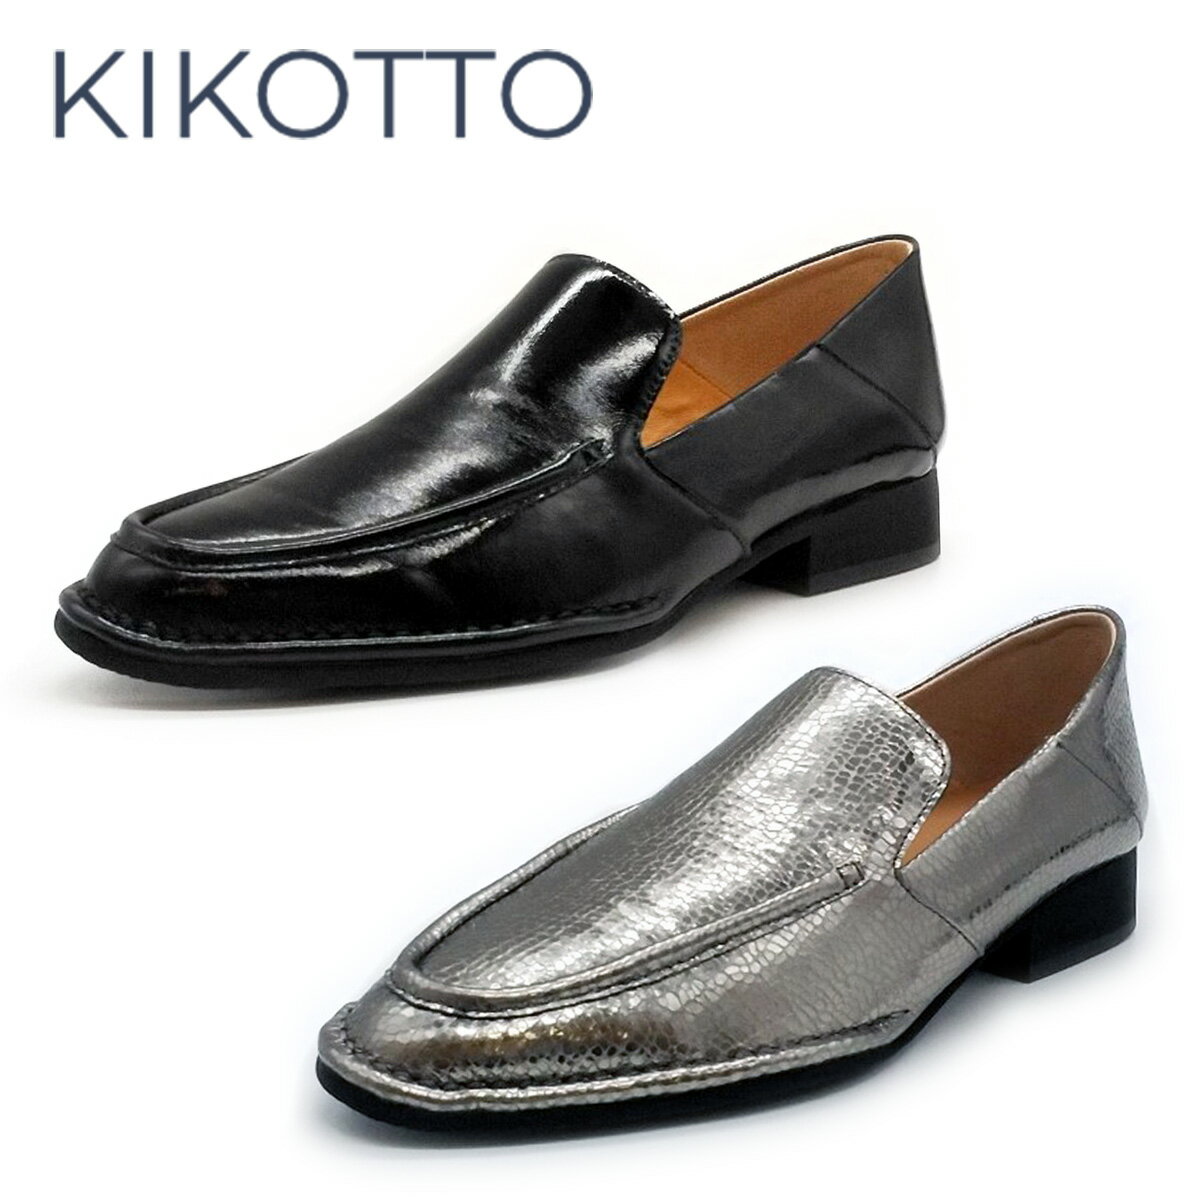 KIKOTTO キコット レディース フラットシューズ KI 0014 靴